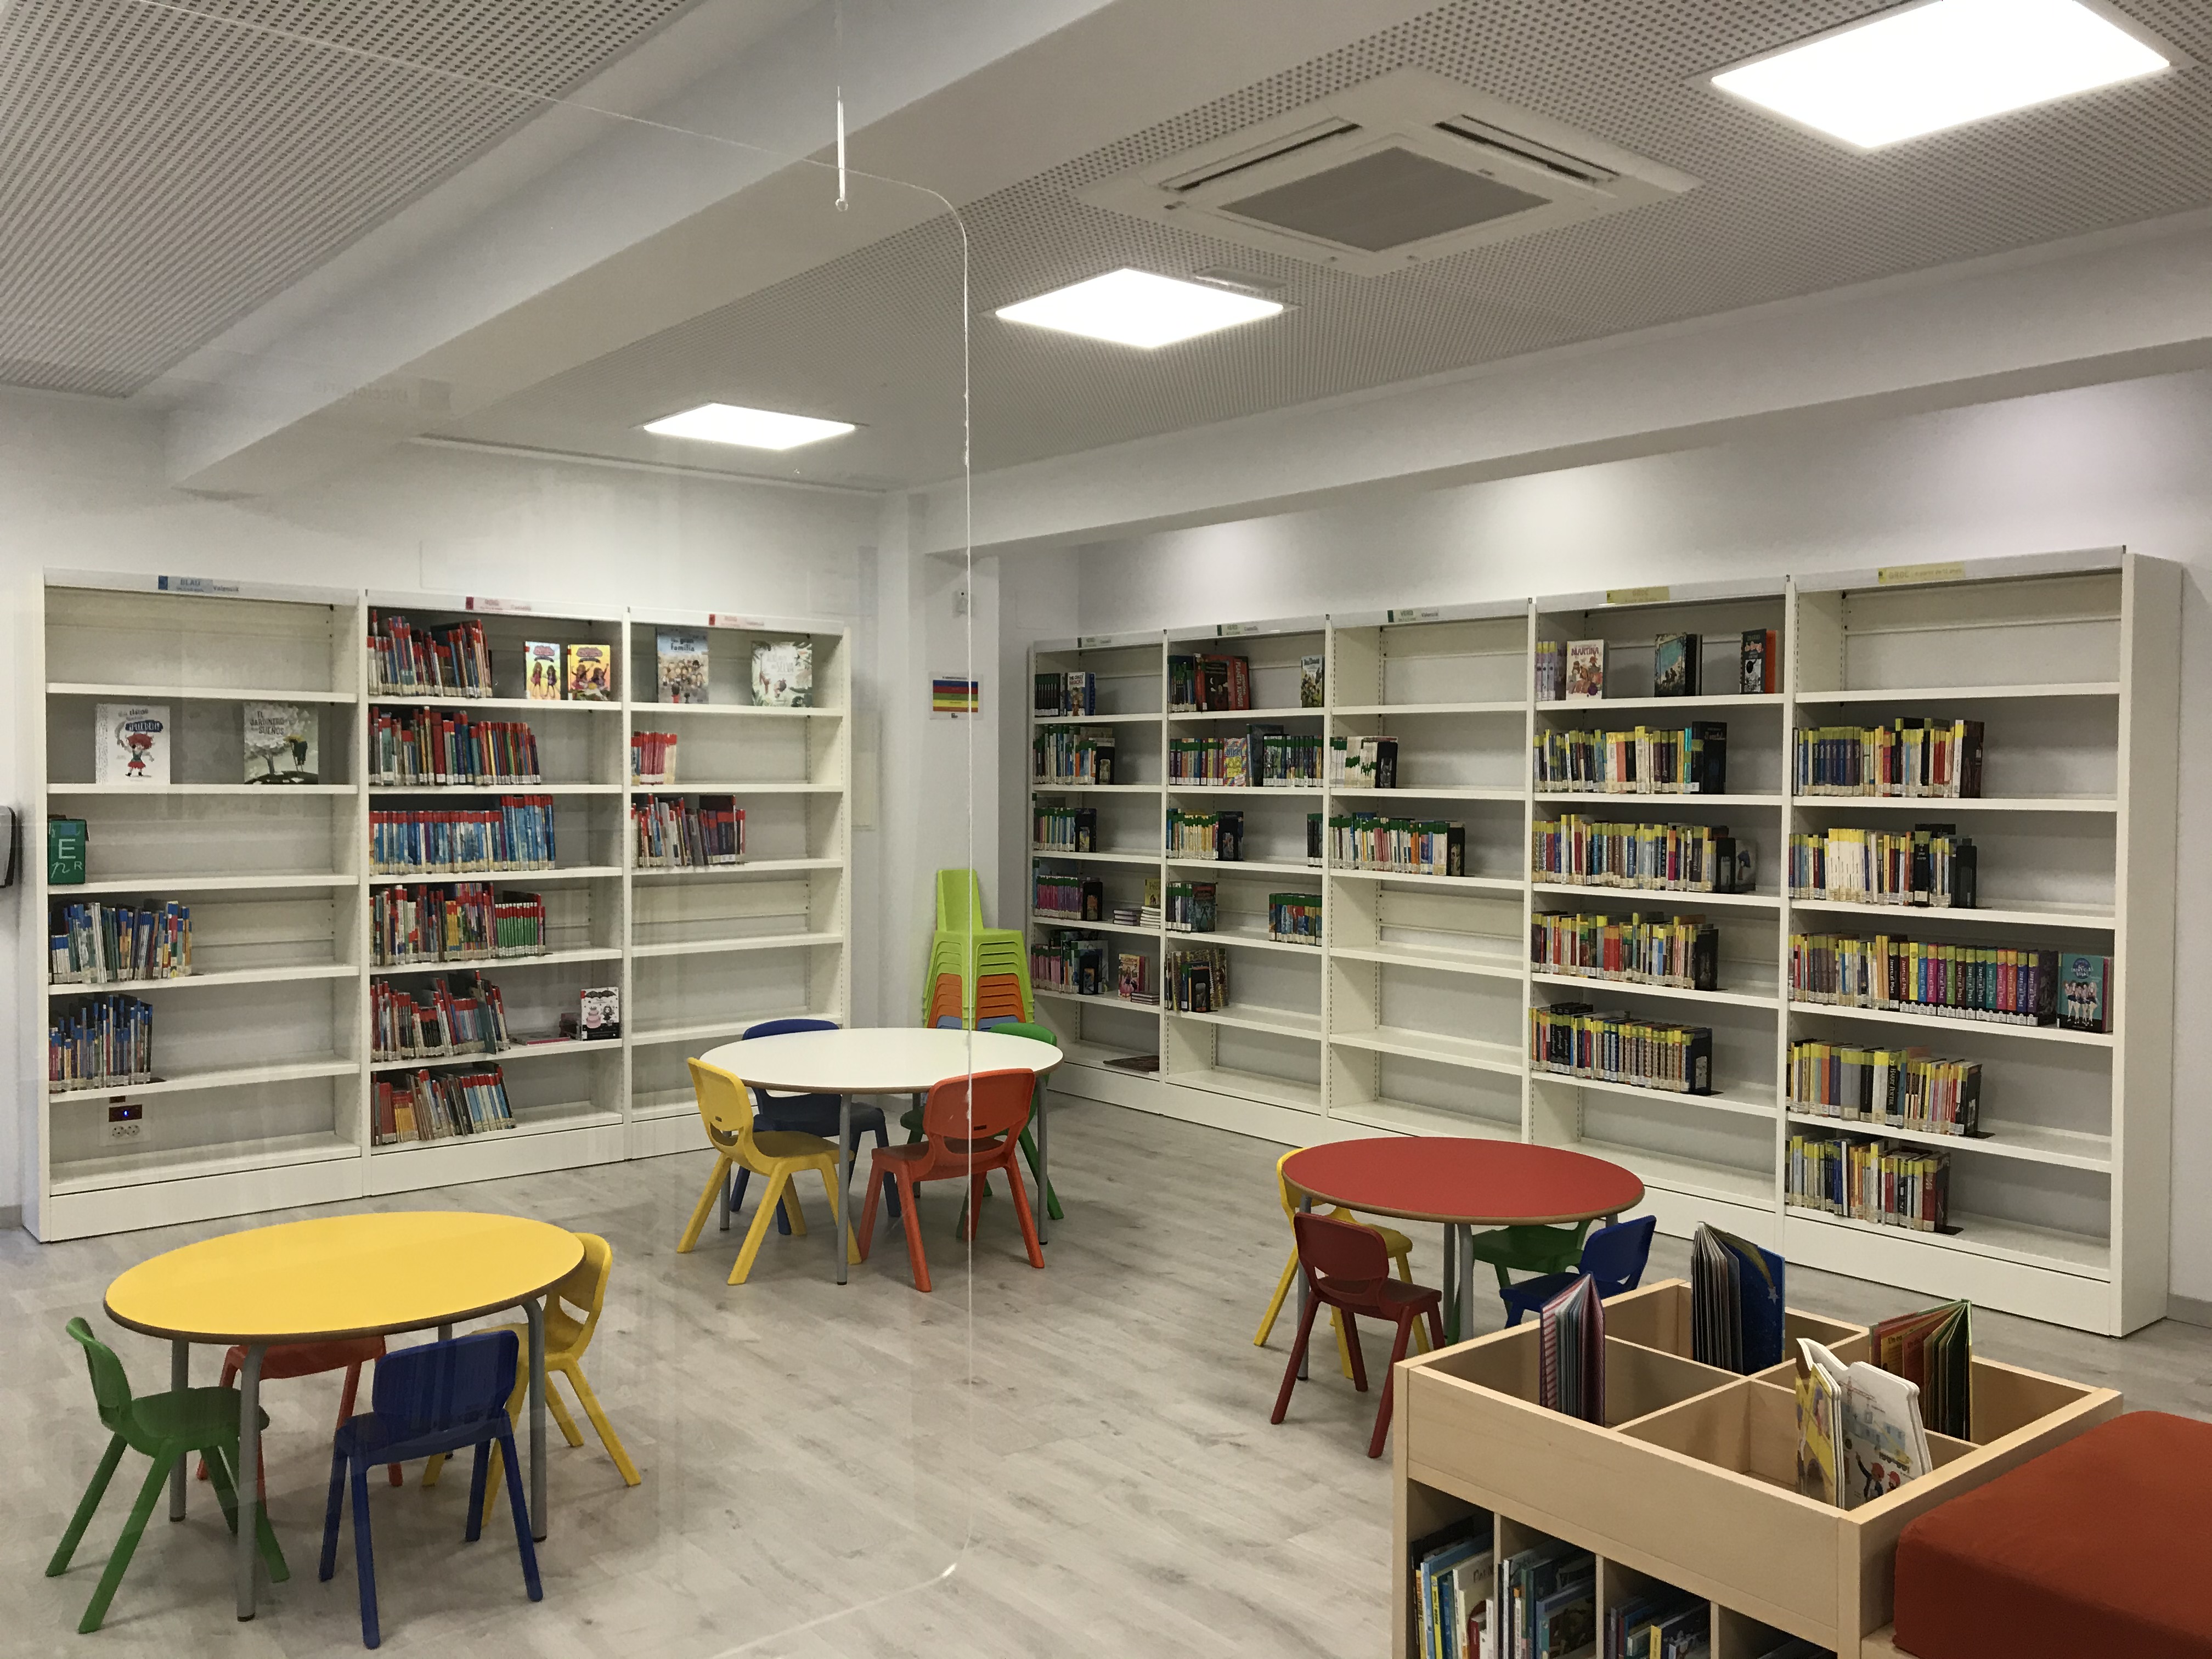 El lunes reabra la biblioteca infantil de la Casa de la Cultura